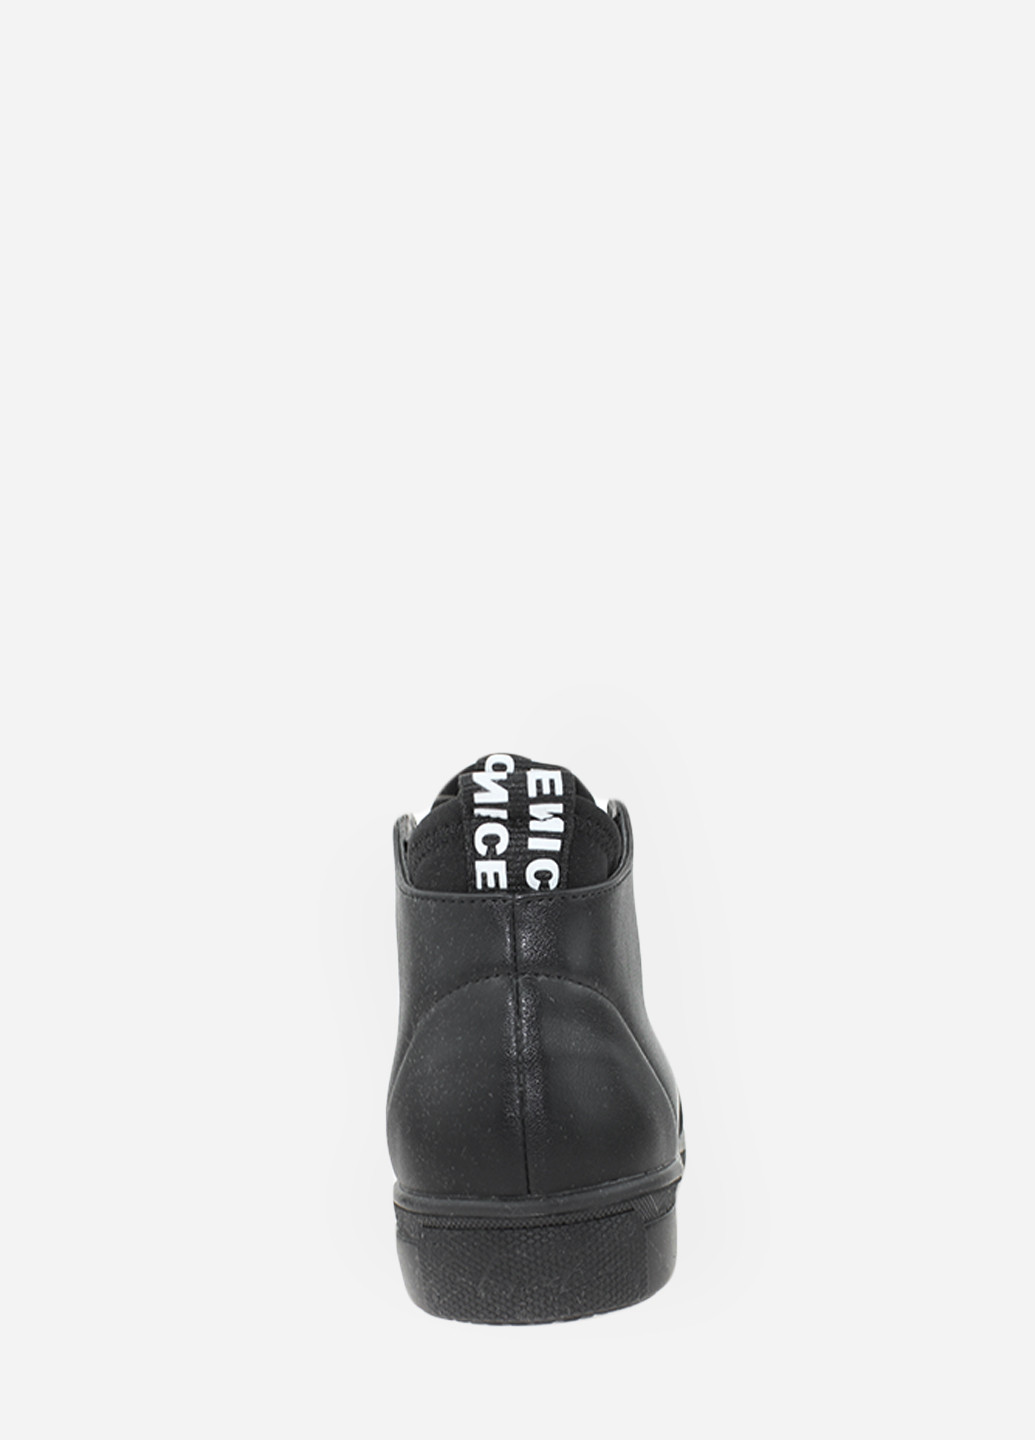 Осенние ботинки r065-1 черный Vito Villini тканевые